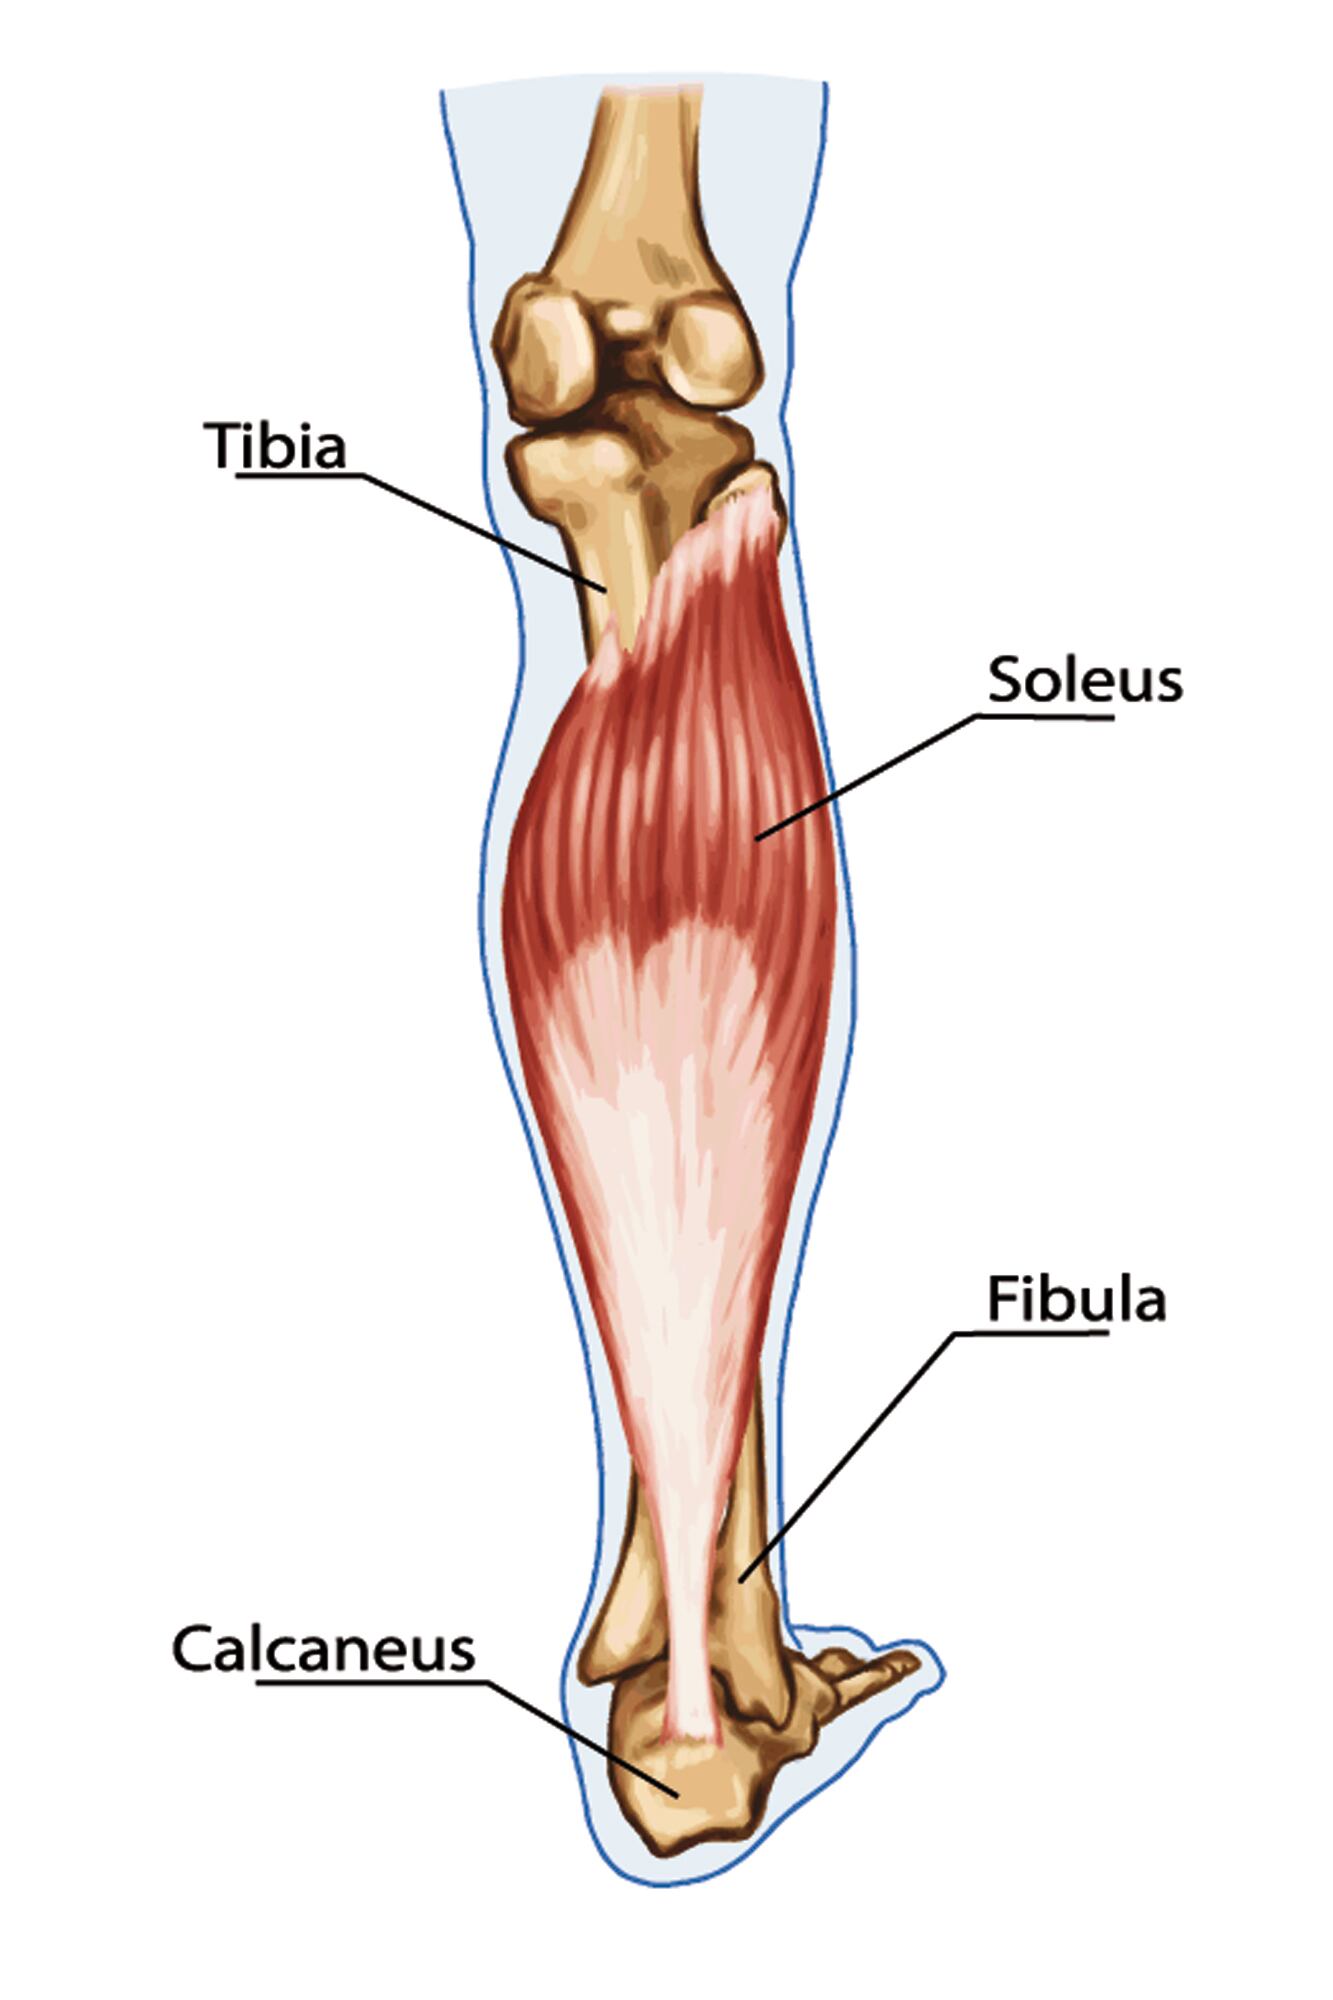 El músculo sóleo (musculus soleus) es un músculo ancho y grueso, situado en la cara posterior de la pierna, debajo y por detrás de los gemelos